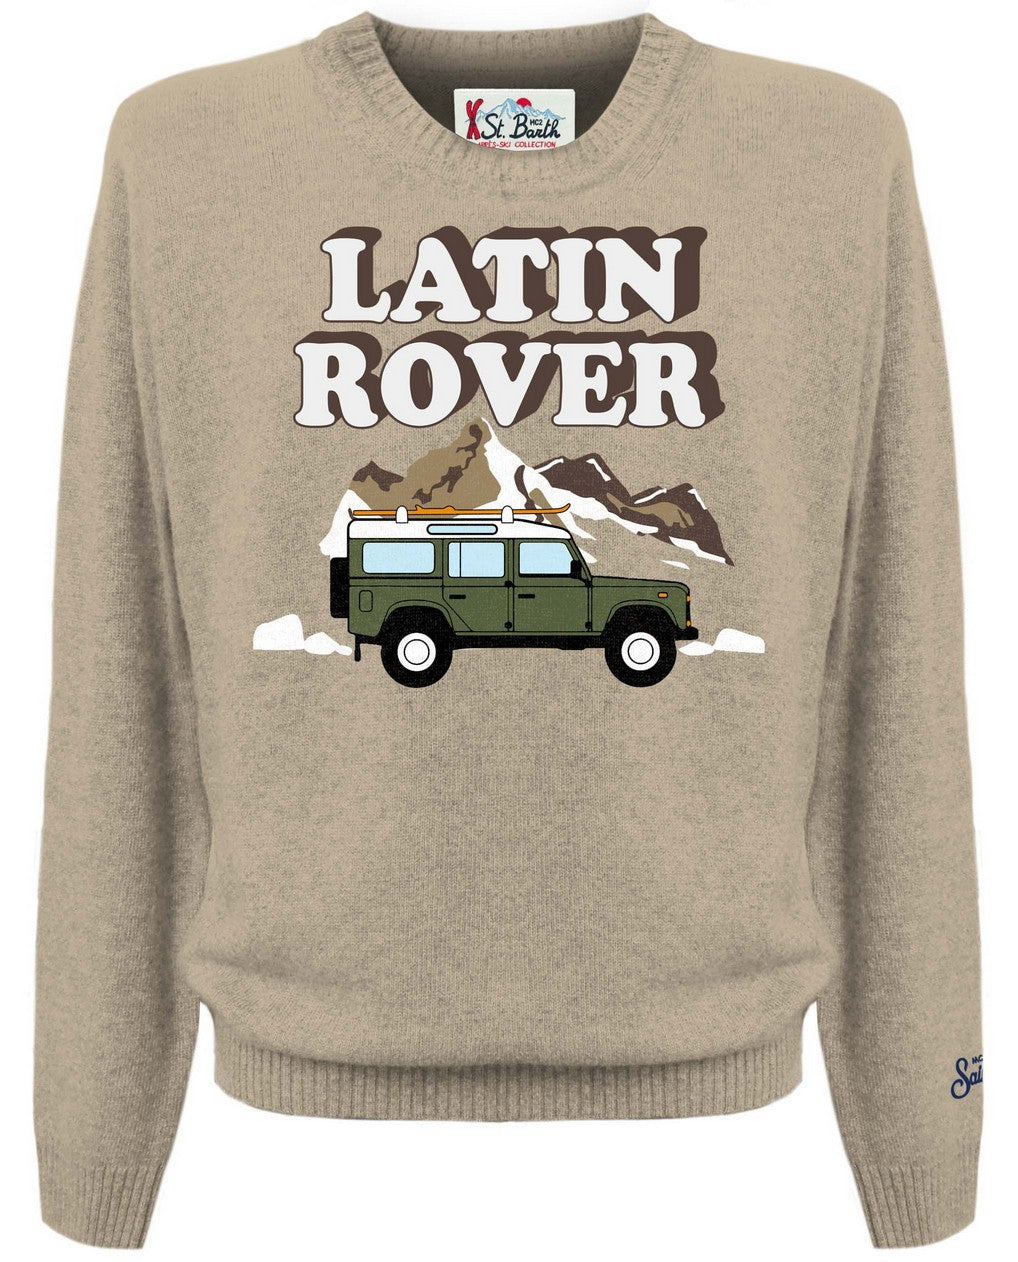 Heron Latin Rover Car Men's Sweater